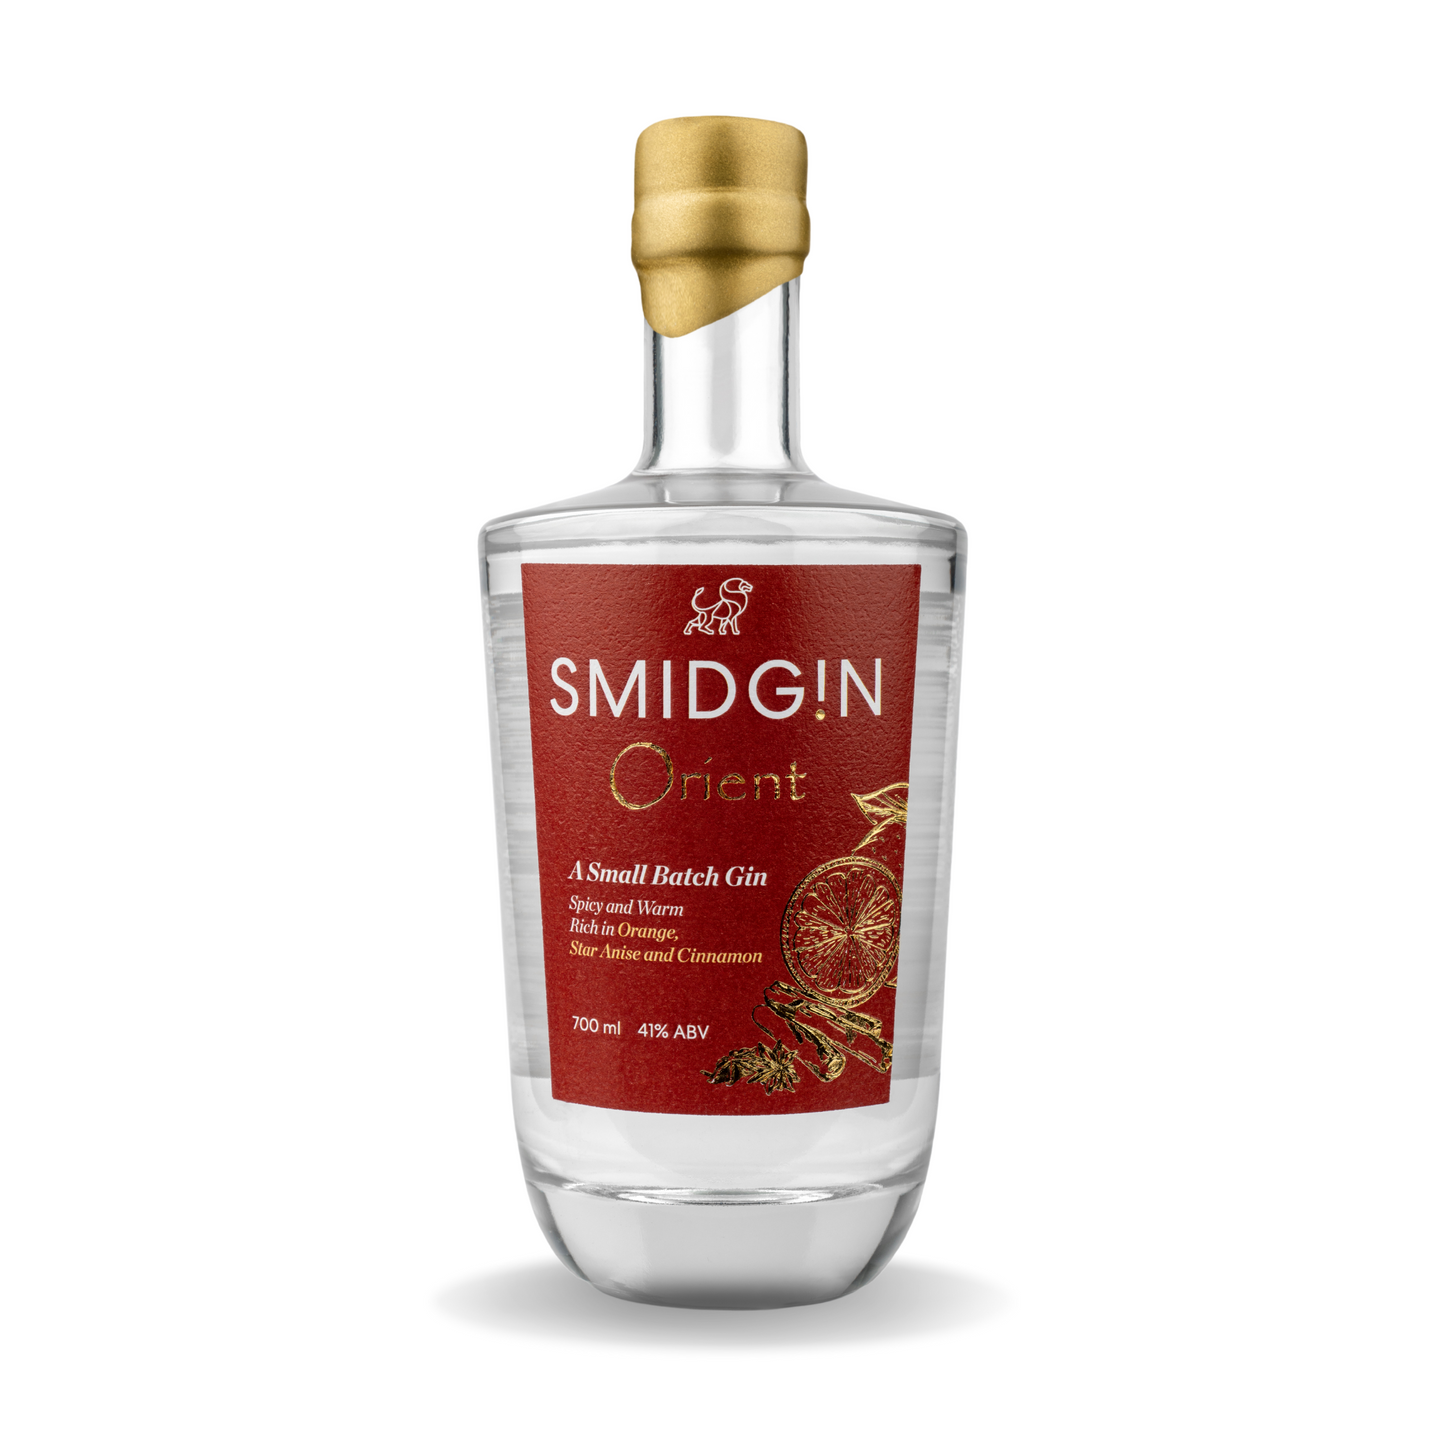 Smidgin Orient Gin, 700ml